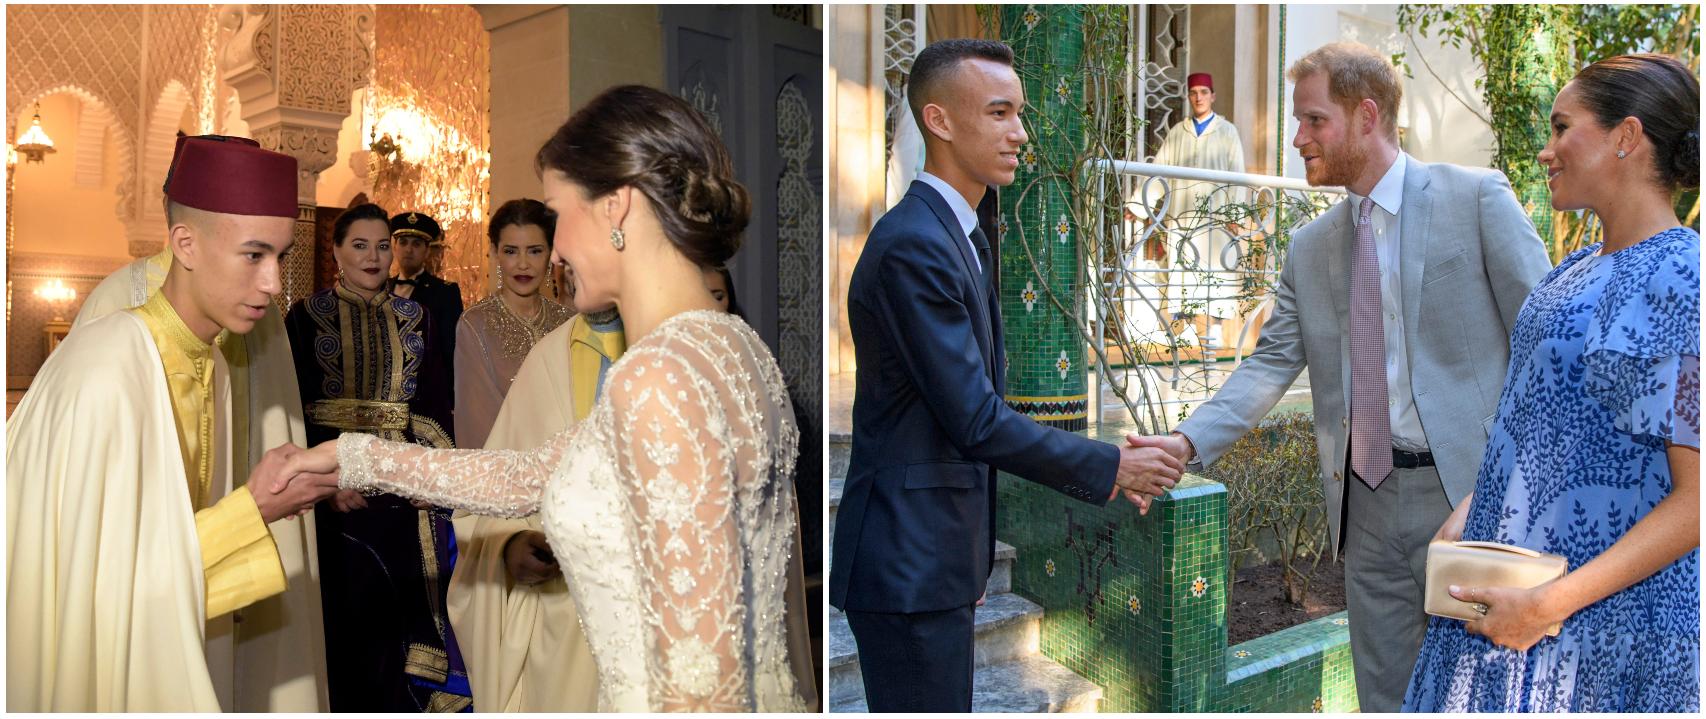 El heredero alauita saludando a la reina Letizia, y al príncipe Harry y Meghan Markle, en 2019.